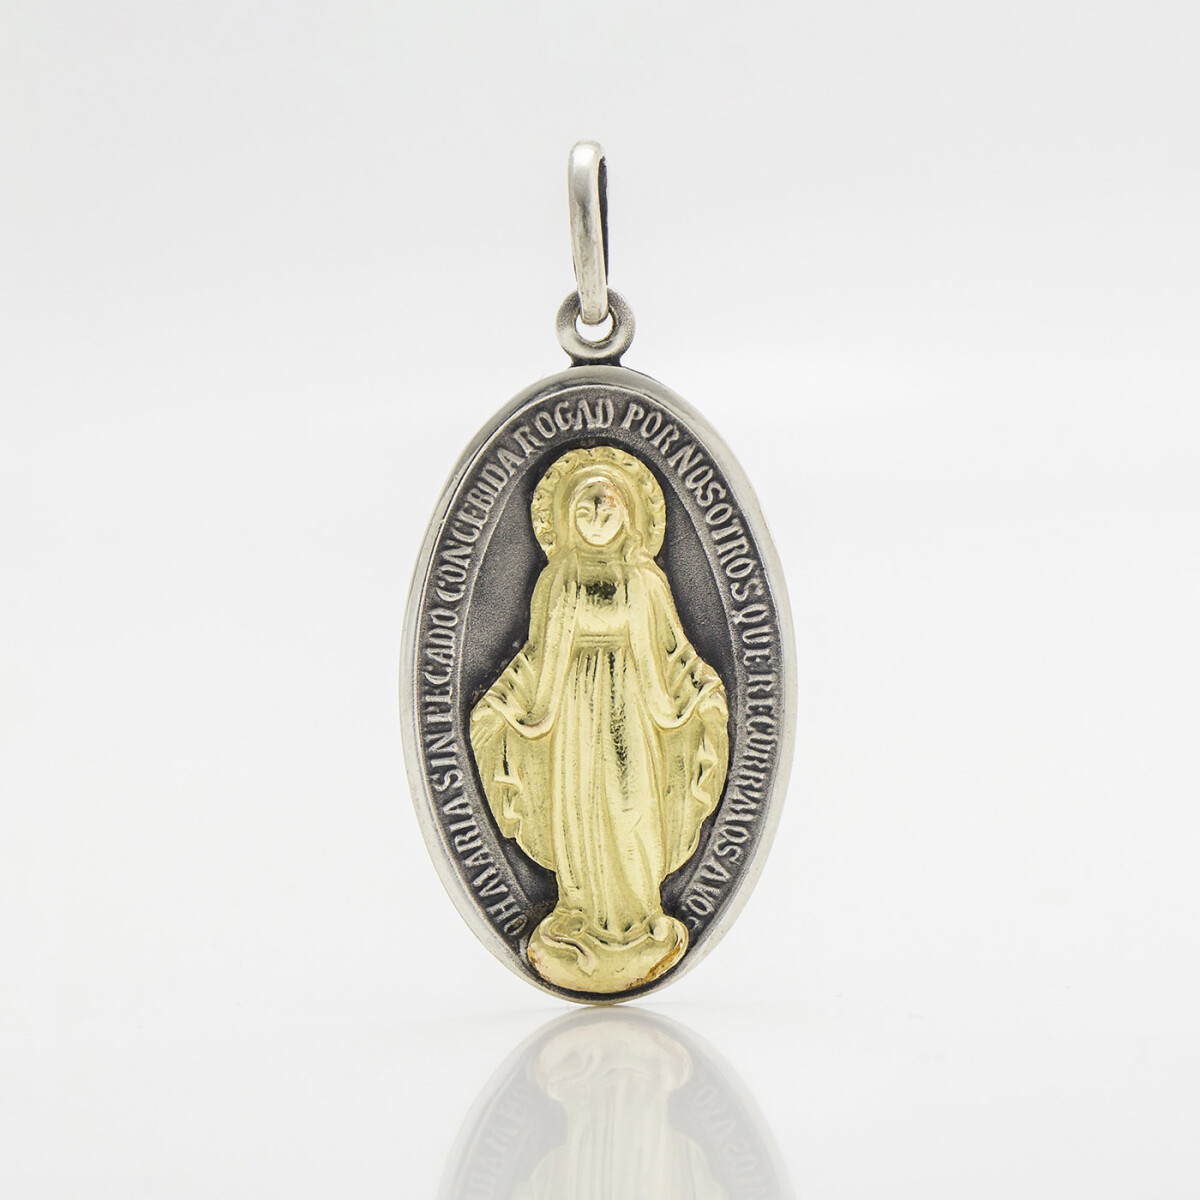 Medalla religiosa de la virgen milagrosa en plata 900 y oro 18 ktes., 36mm * 22mm. 